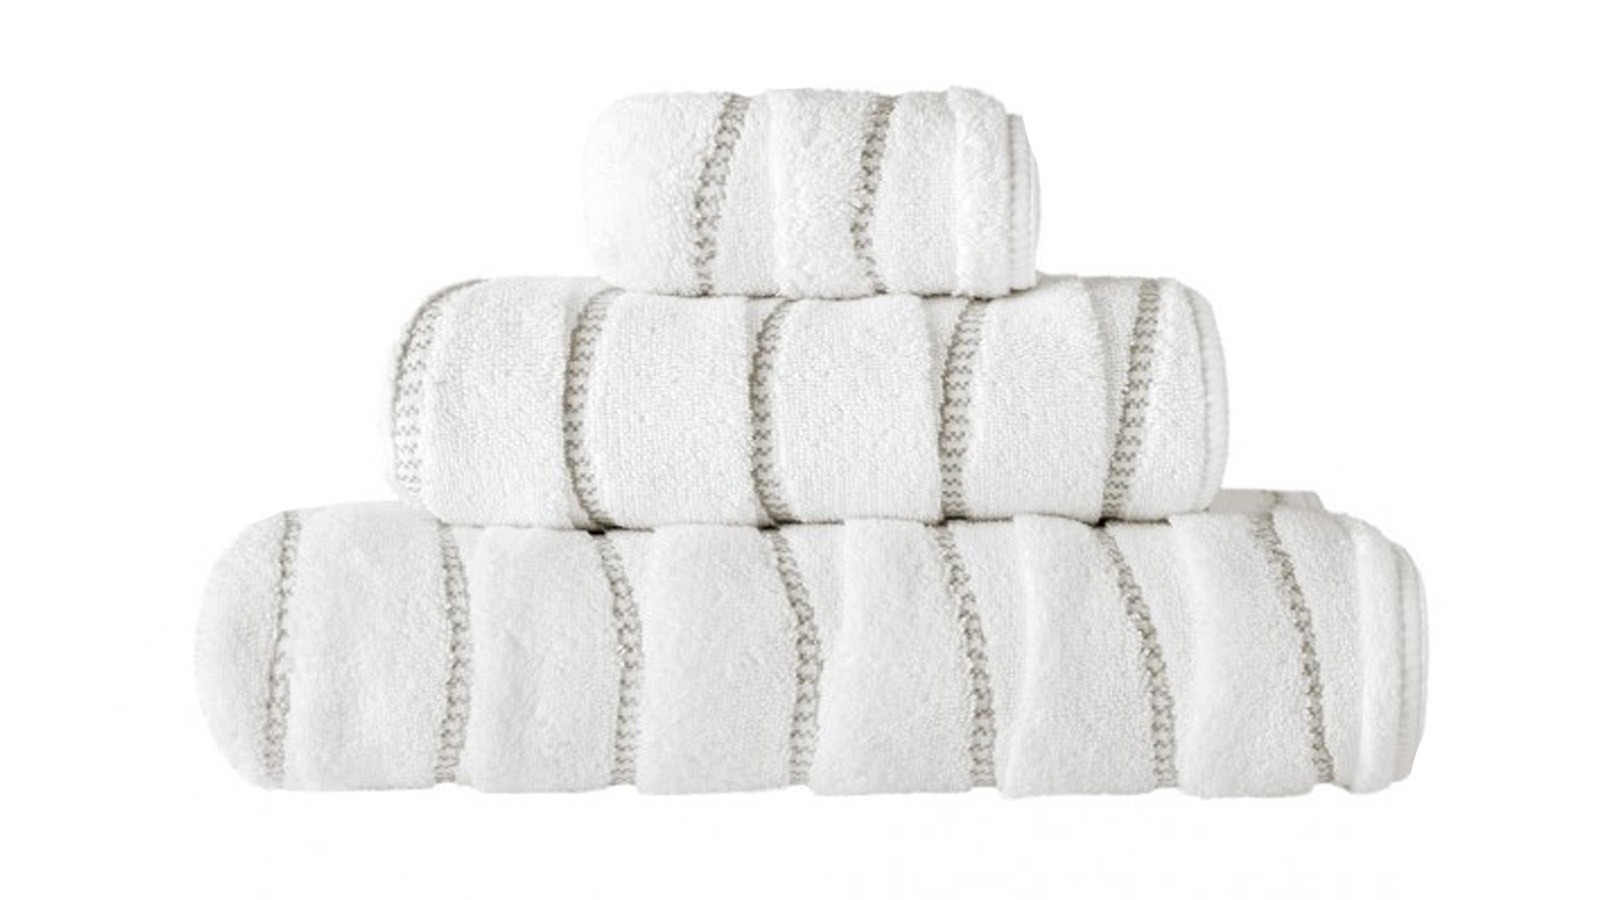 Υψηλής ποιότητας πετσέτες βαμβακιού και λινού OPERA